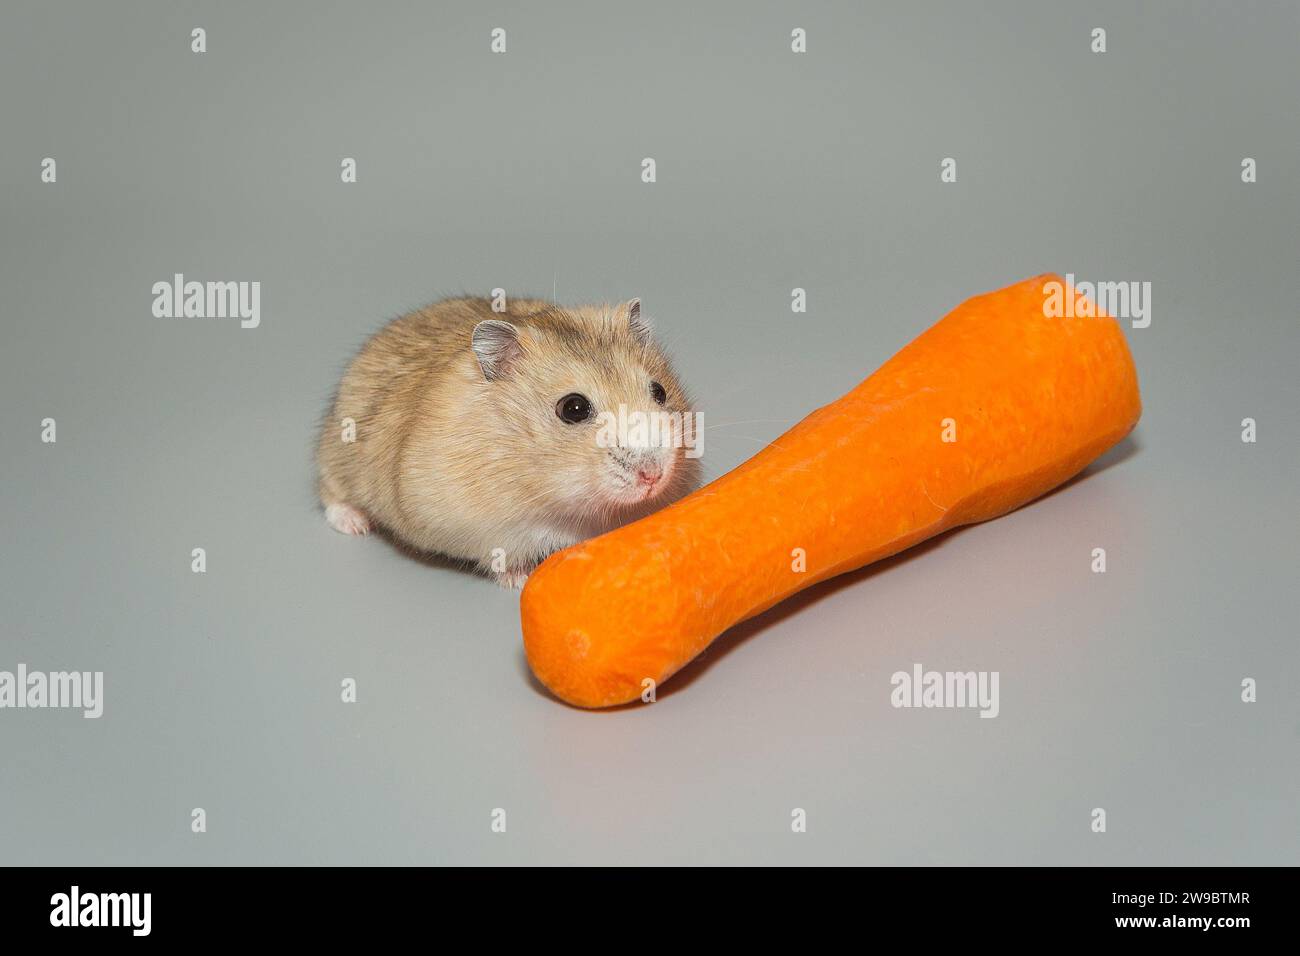 Petit hamster dzhungarian brun et carotte, sur fond gris Banque D'Images